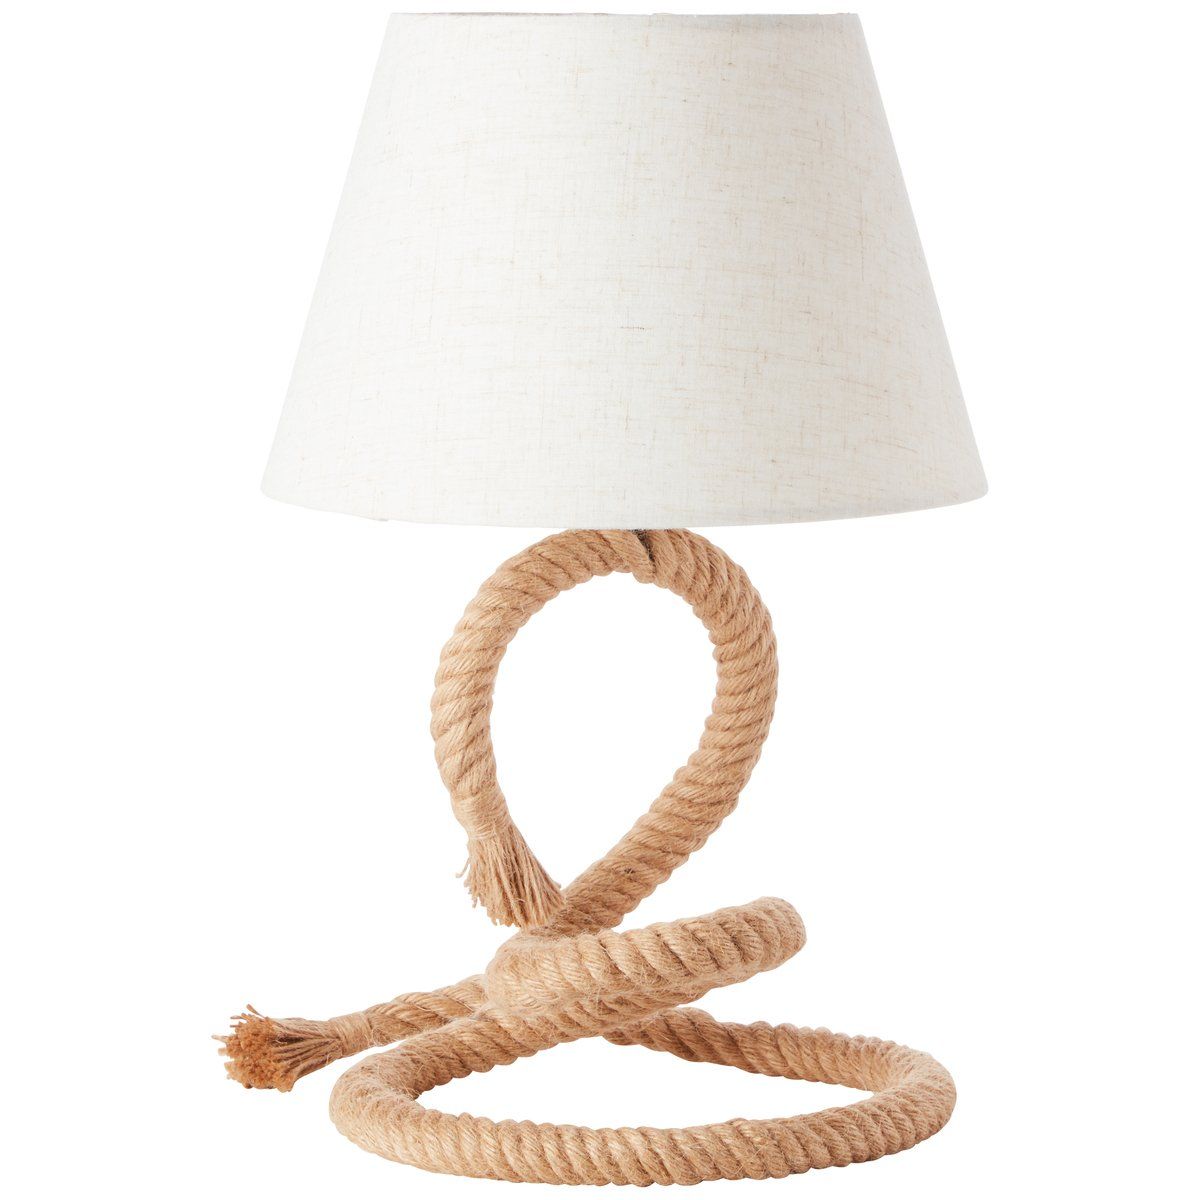 Lampe à poser SAILOR en corde naturelle avec abat-jour en tissu blanc